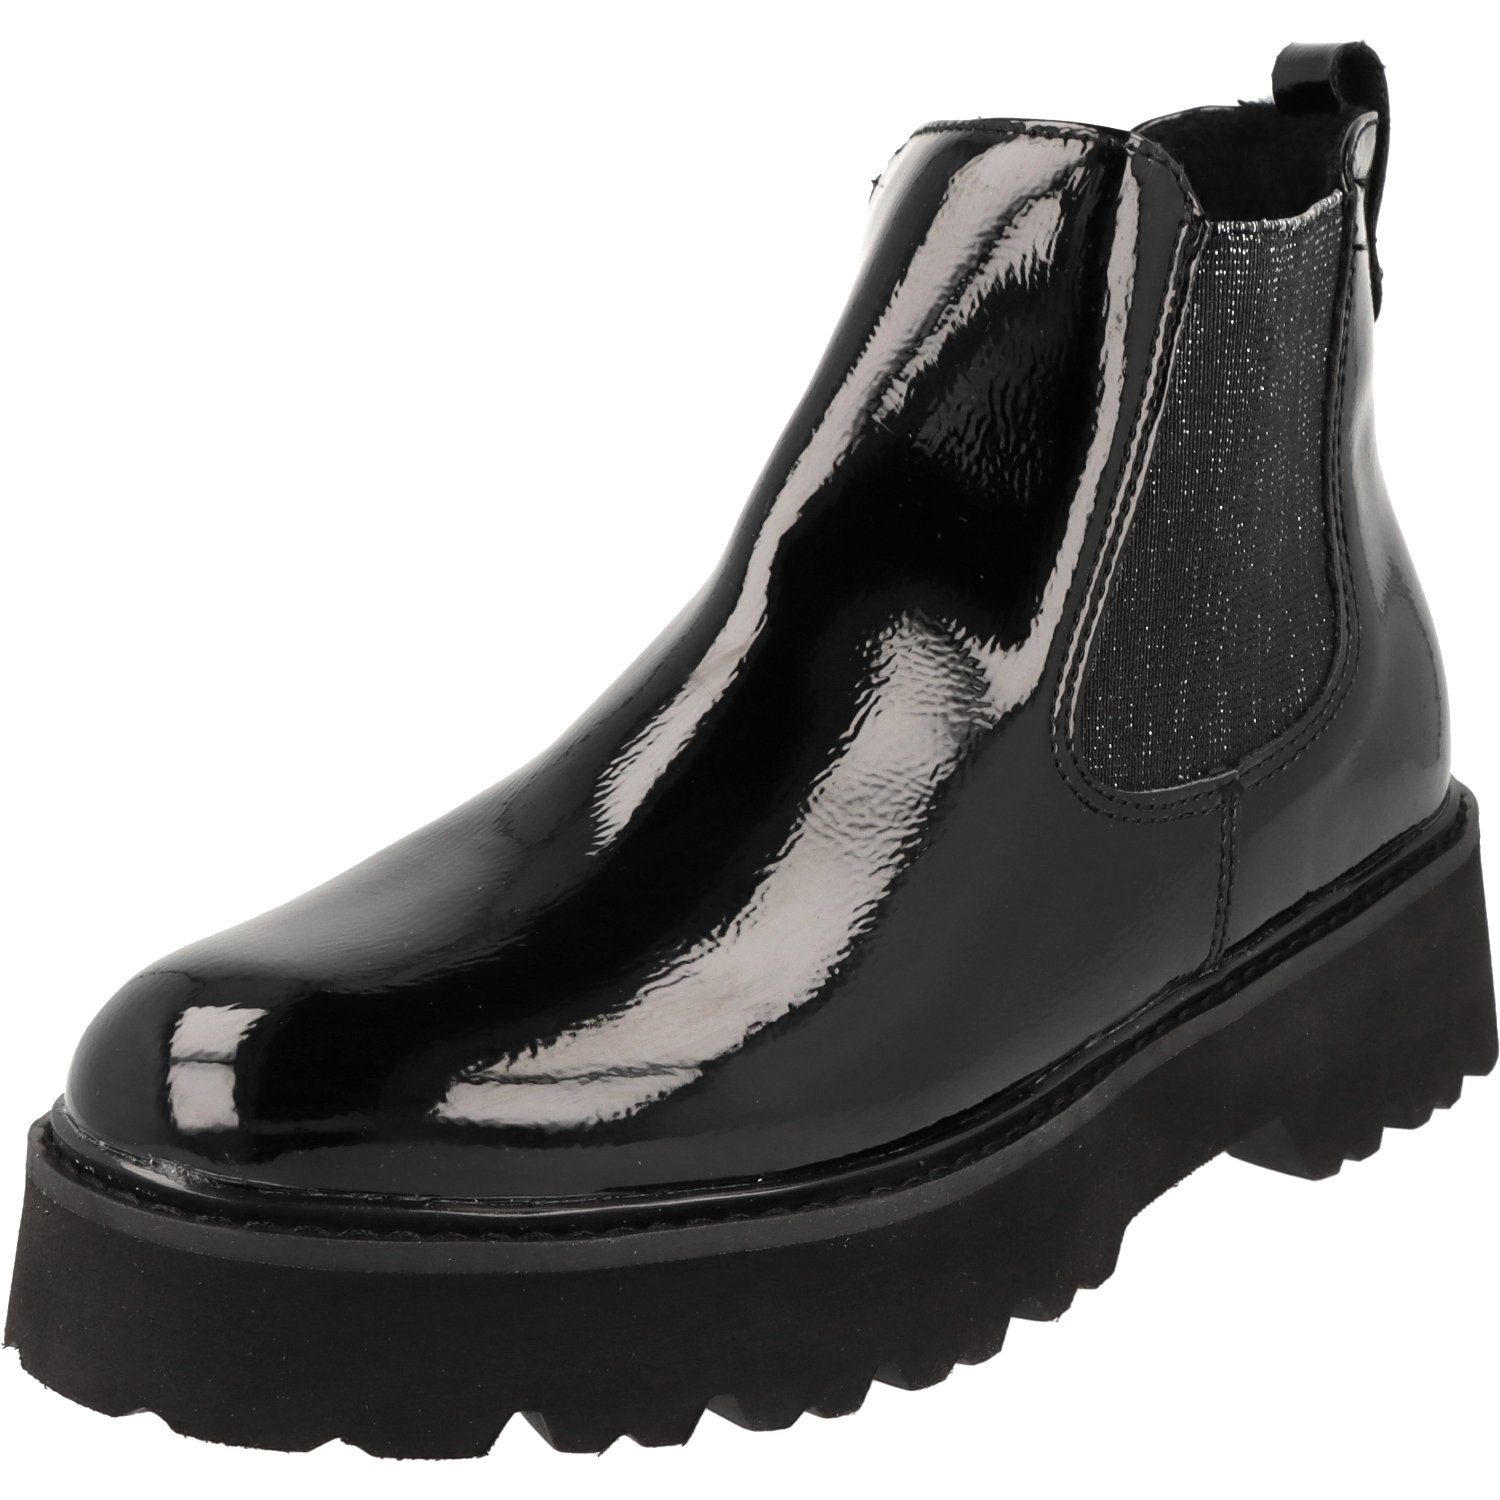 Chelseaboots Boots Klain Damen Stiefel Jane Plateau Lack Schuhe Black 254-498